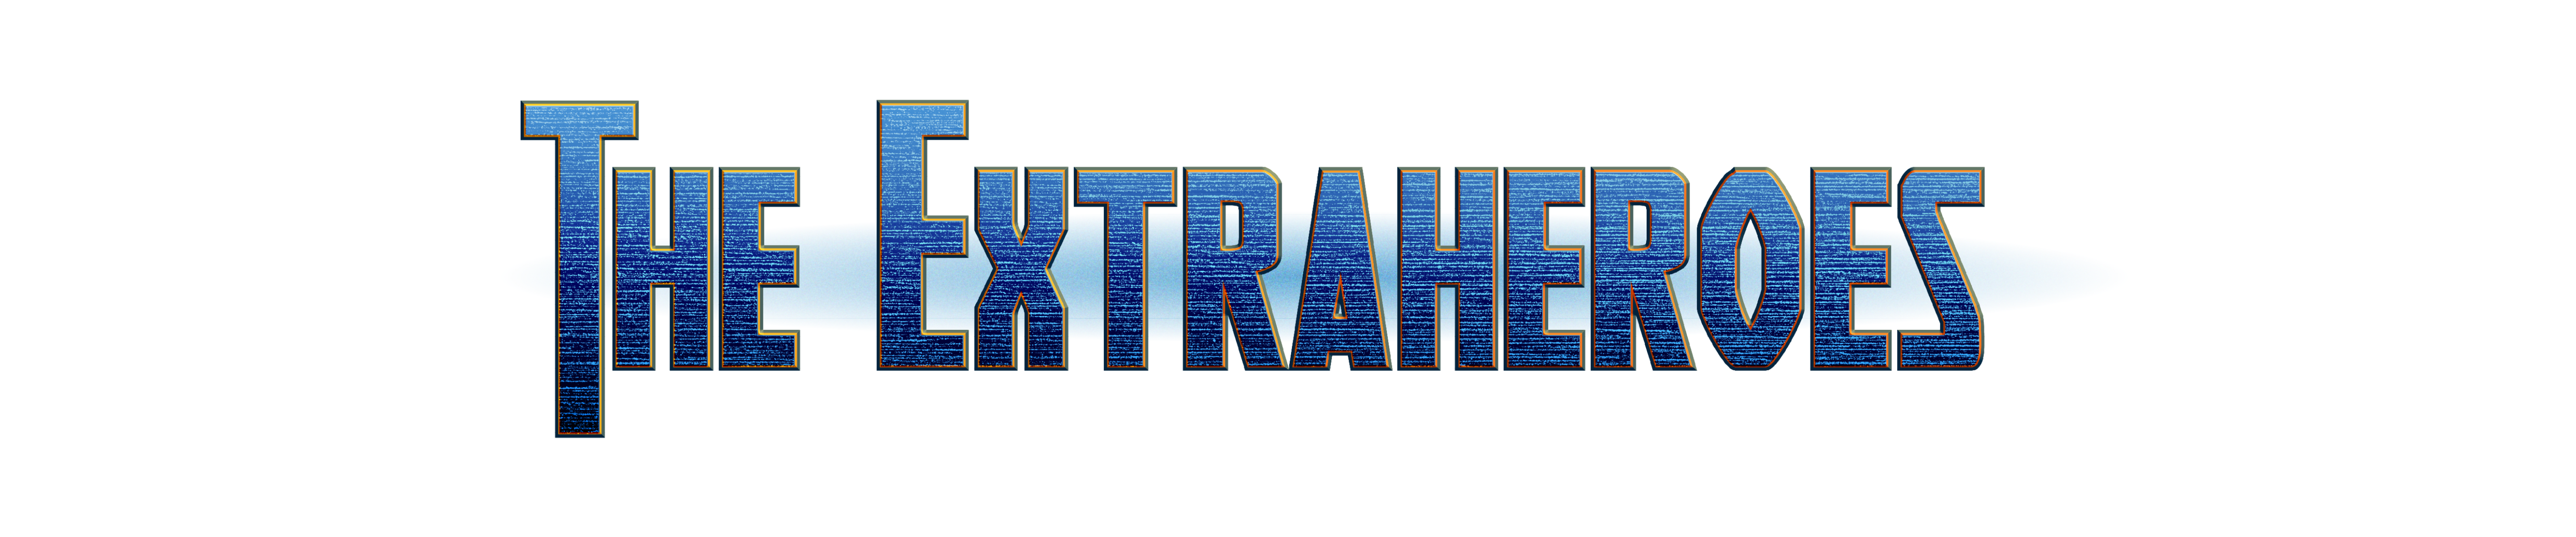 the extraheroes logo header